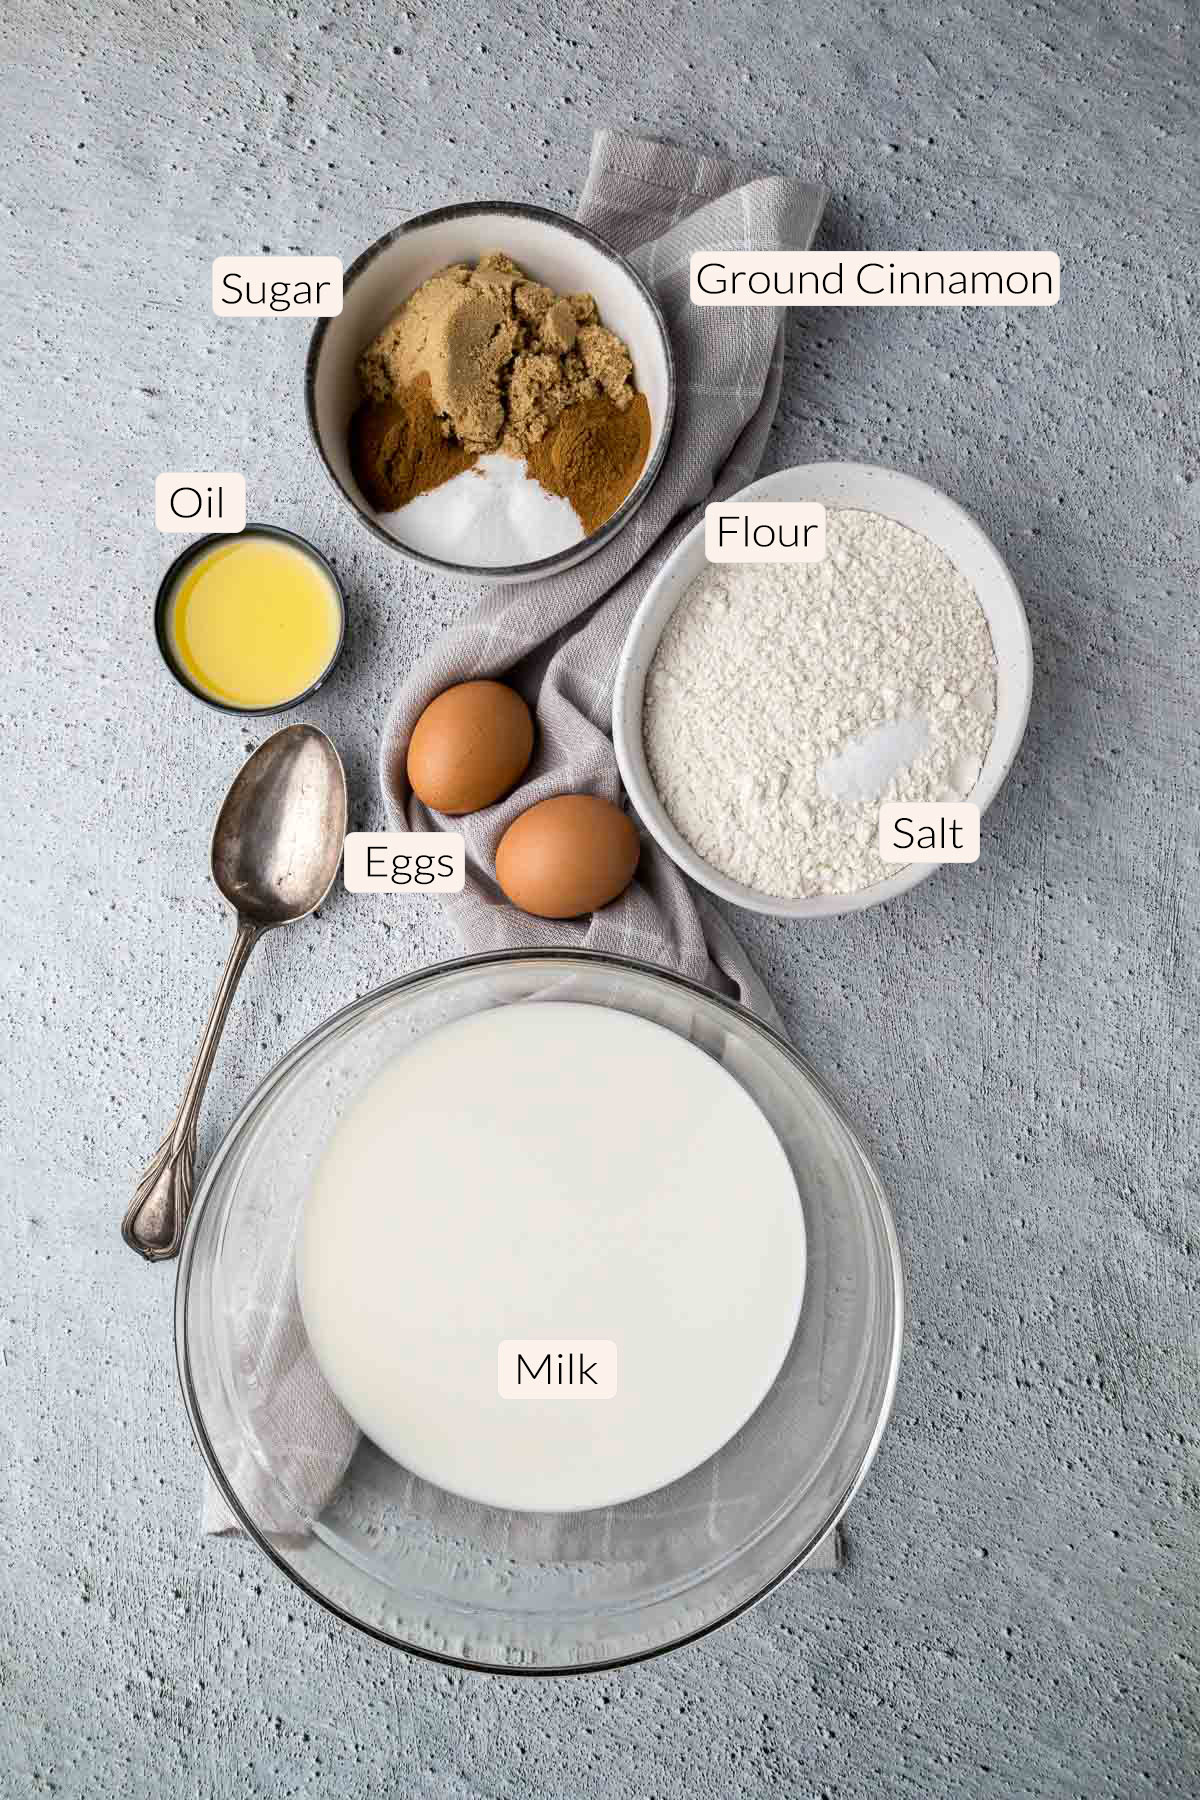 Pannekoek ingredients - flour, salt, sugar, cinnamon, eggs, oil and milk.